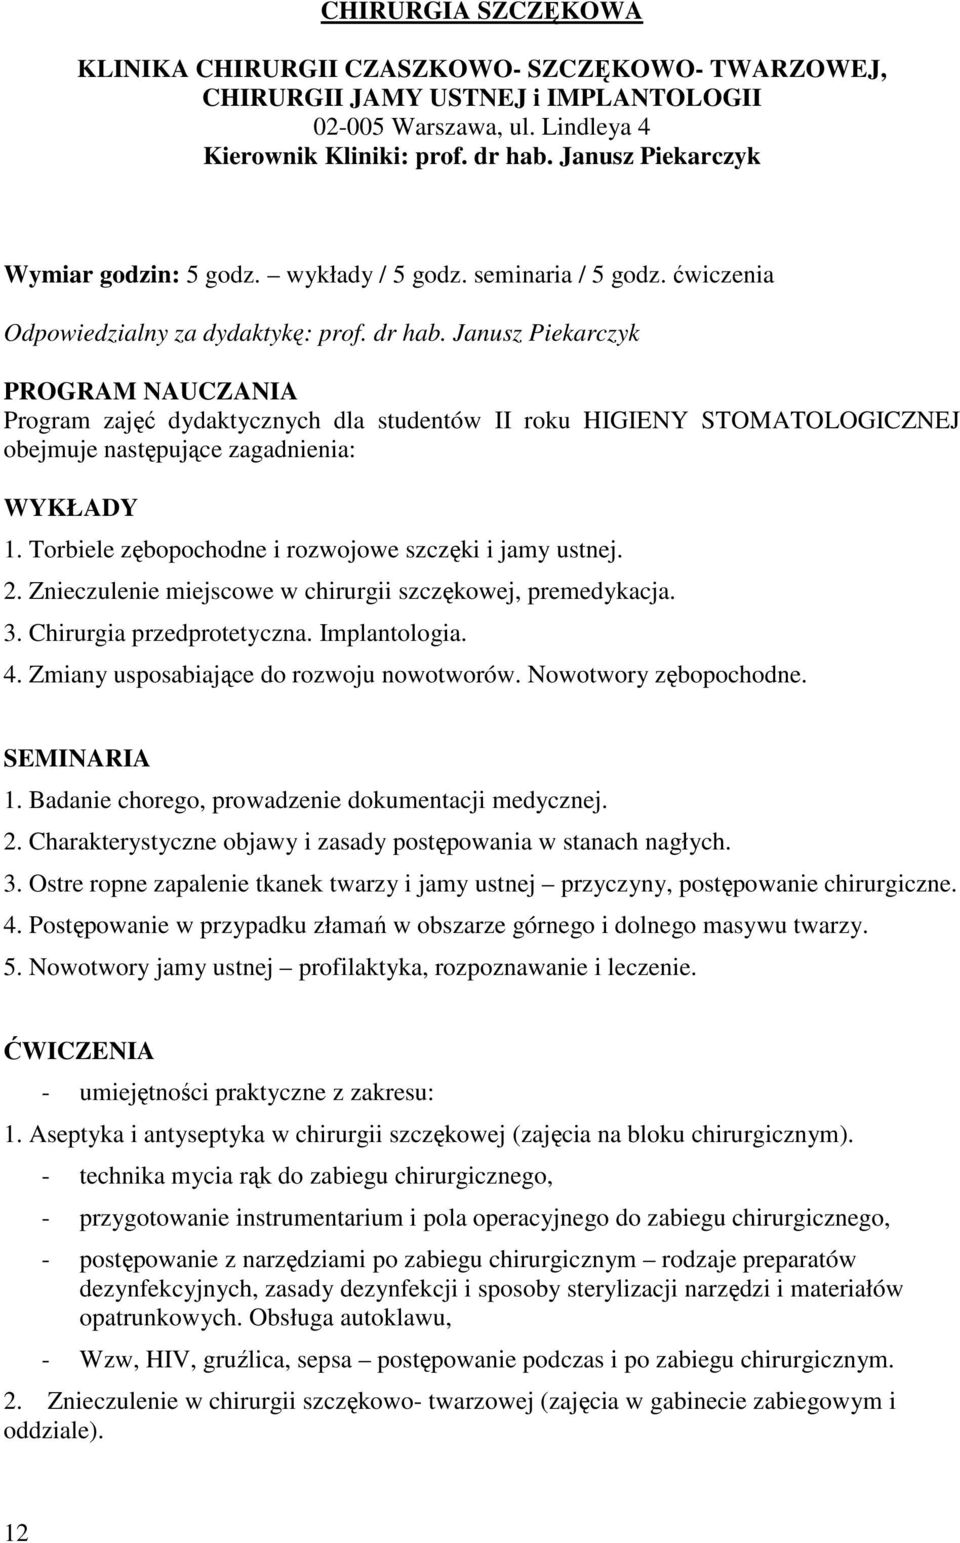 Janusz Piekarczyk PROGRAM NAUCZANIA Program zajęć dydaktycznych dla studentów II roku HIGIENY STOMATOLOGICZNEJ obejmuje następujące zagadnienia: WYKŁADY 1.